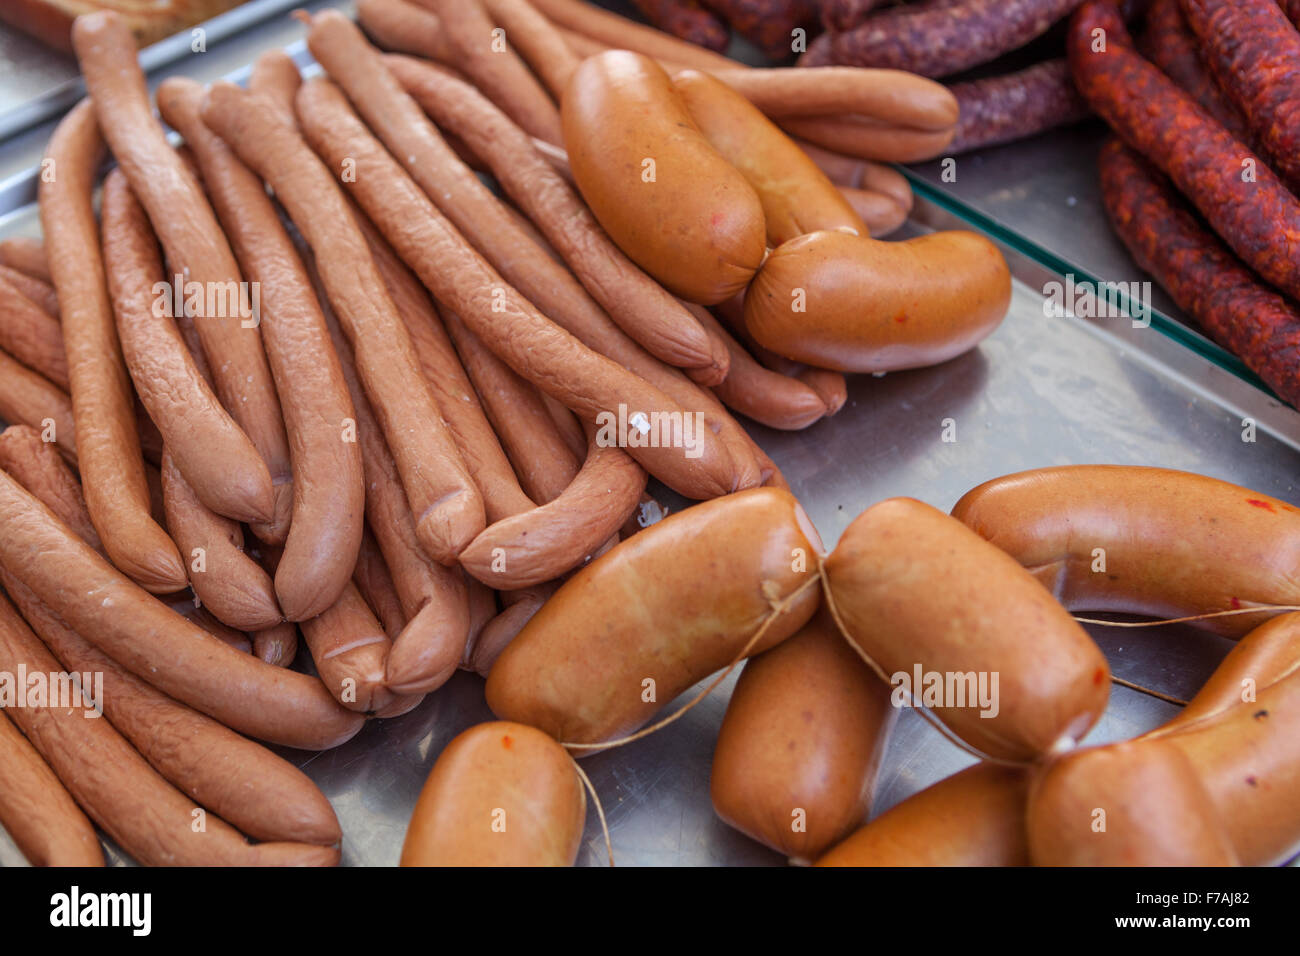 Verschiedene Arten von frischem Wurstfleisch auf dem Speisekarte Metzgerei Markt Tschechien Stockfoto